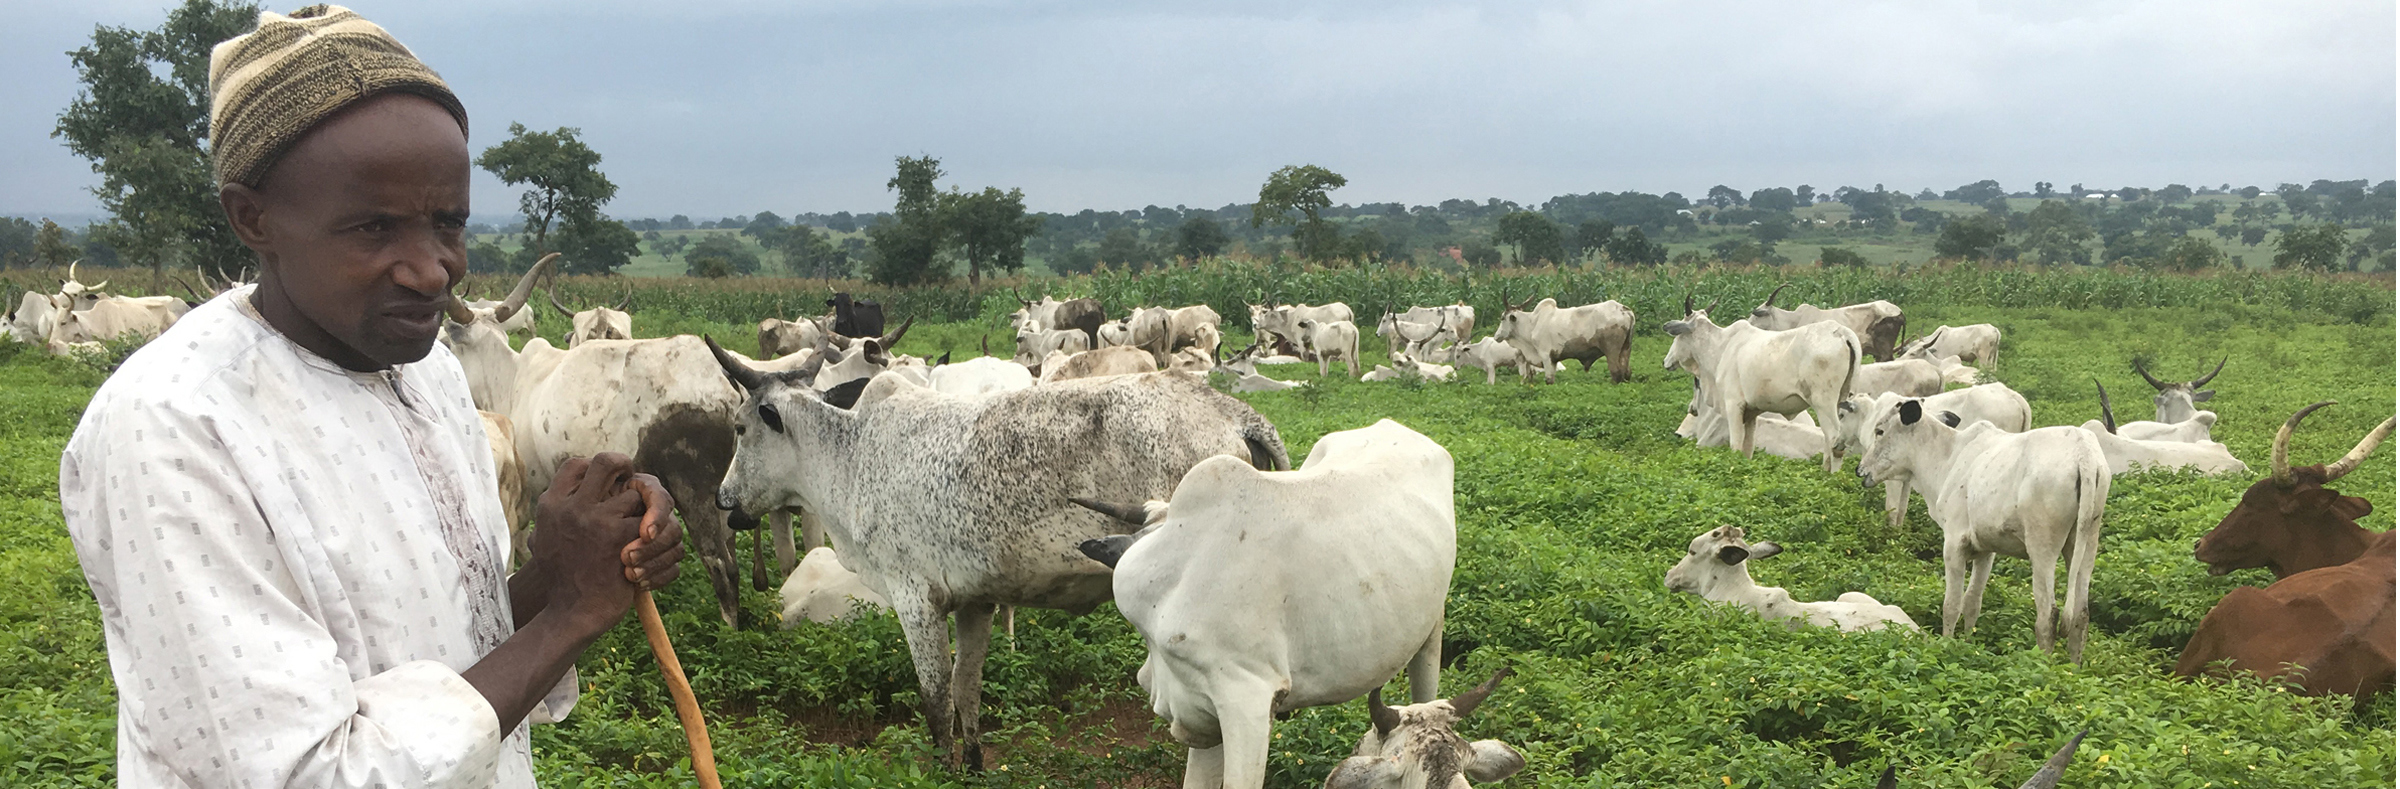 Nigerian farmer with cows